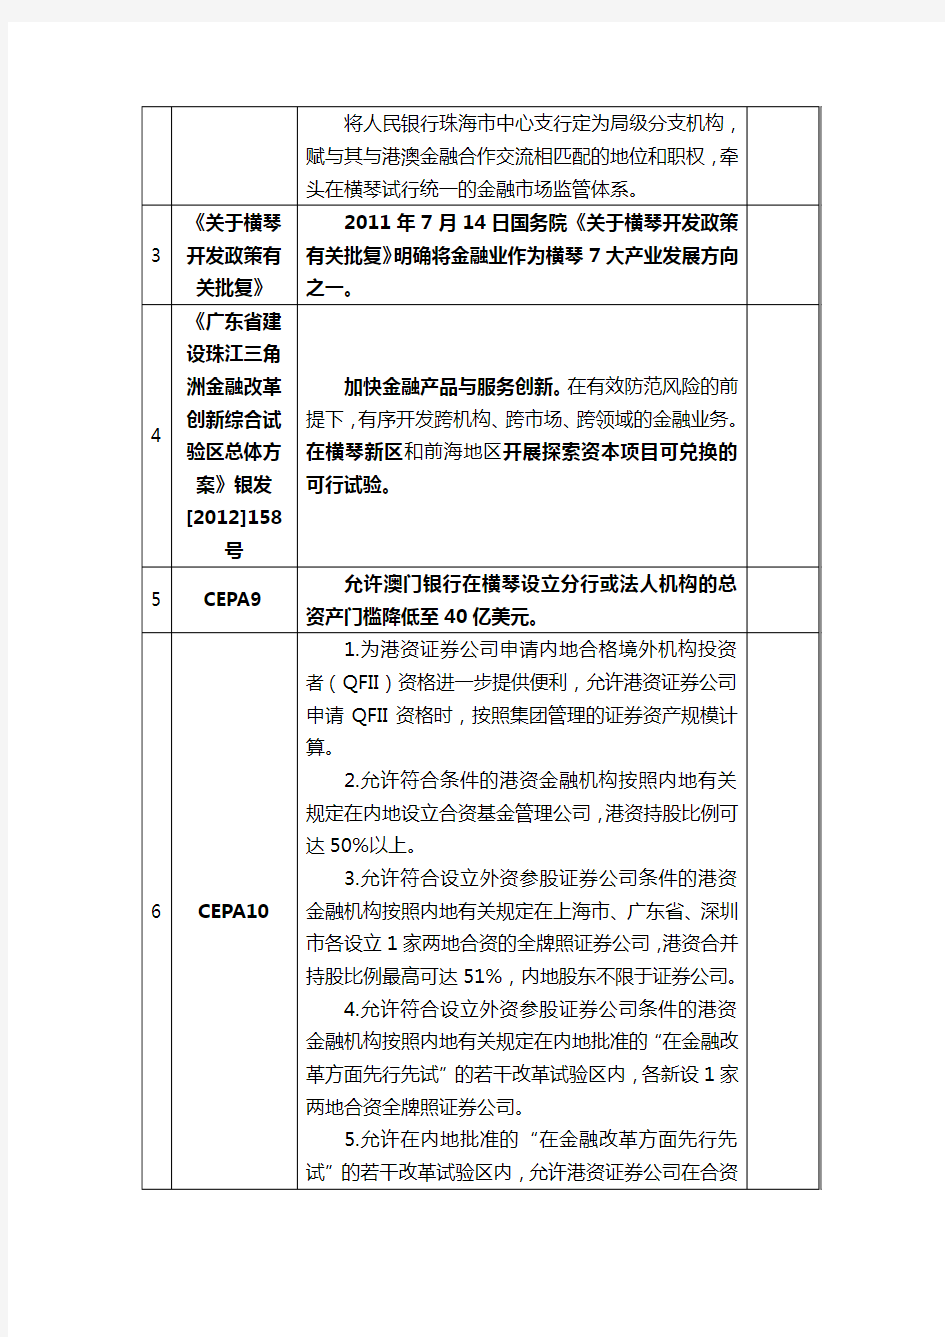 横琴新区已颁布优惠政策一览表(金融部分)-20140612.doc